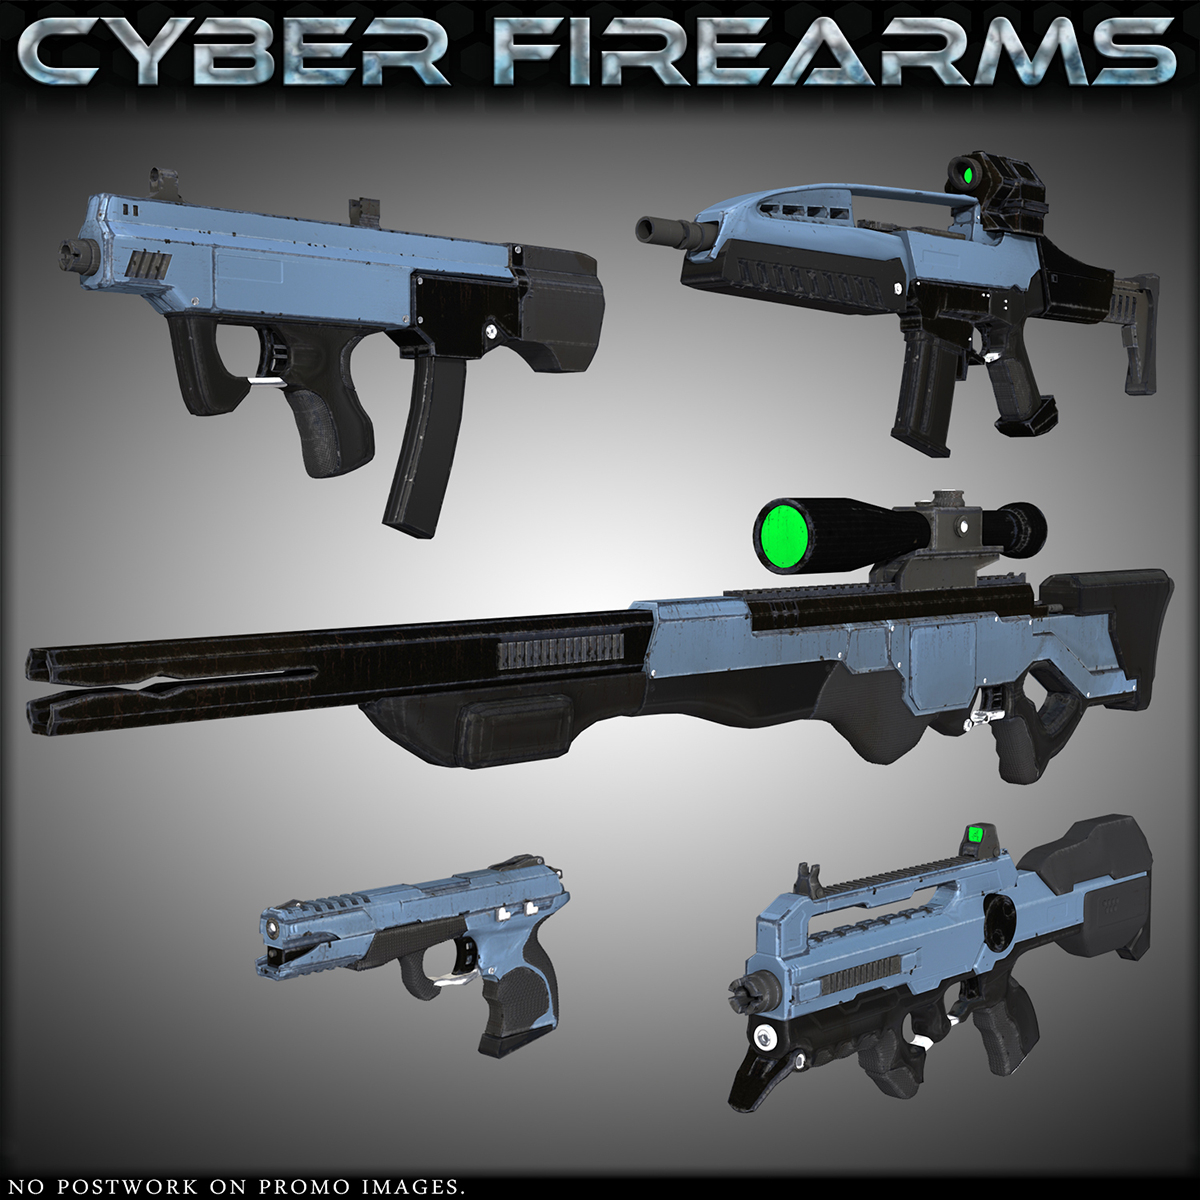 HFS Cyber Firearms